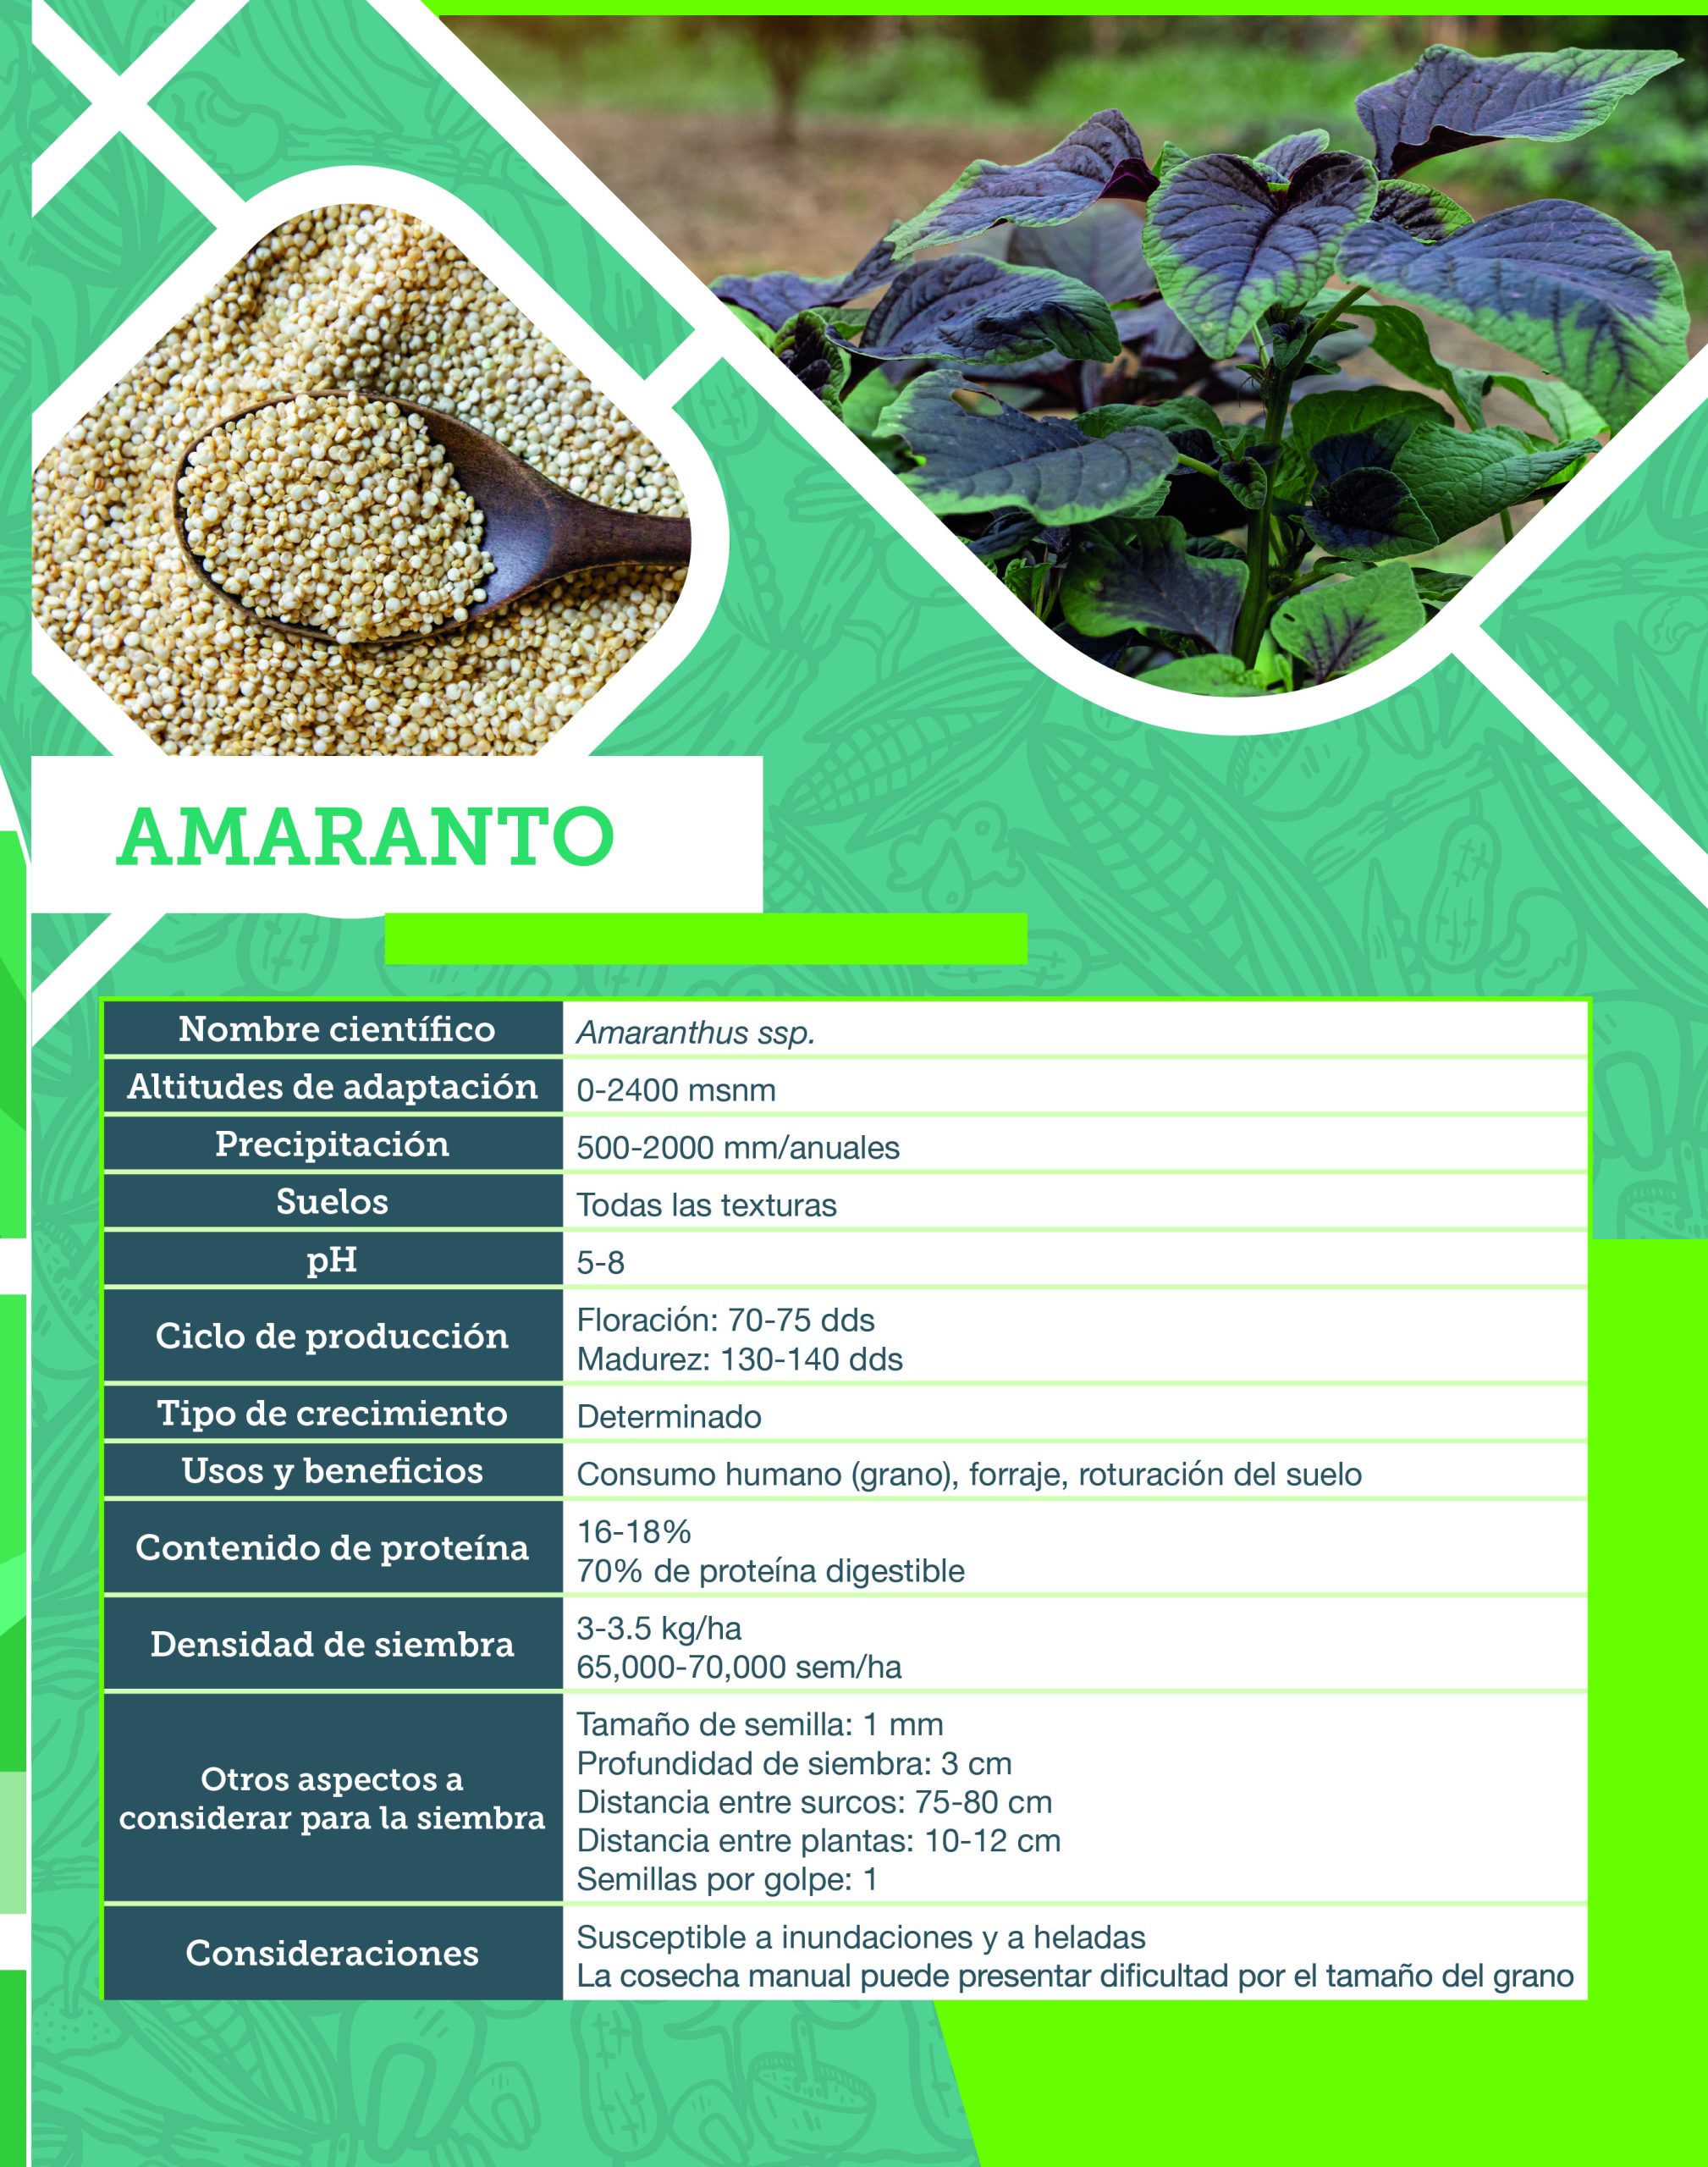 Amaranto (ficha técnica), en Cultivos alternativos. Intensificación y diversificación sustentable. CIMMYT (2021). 